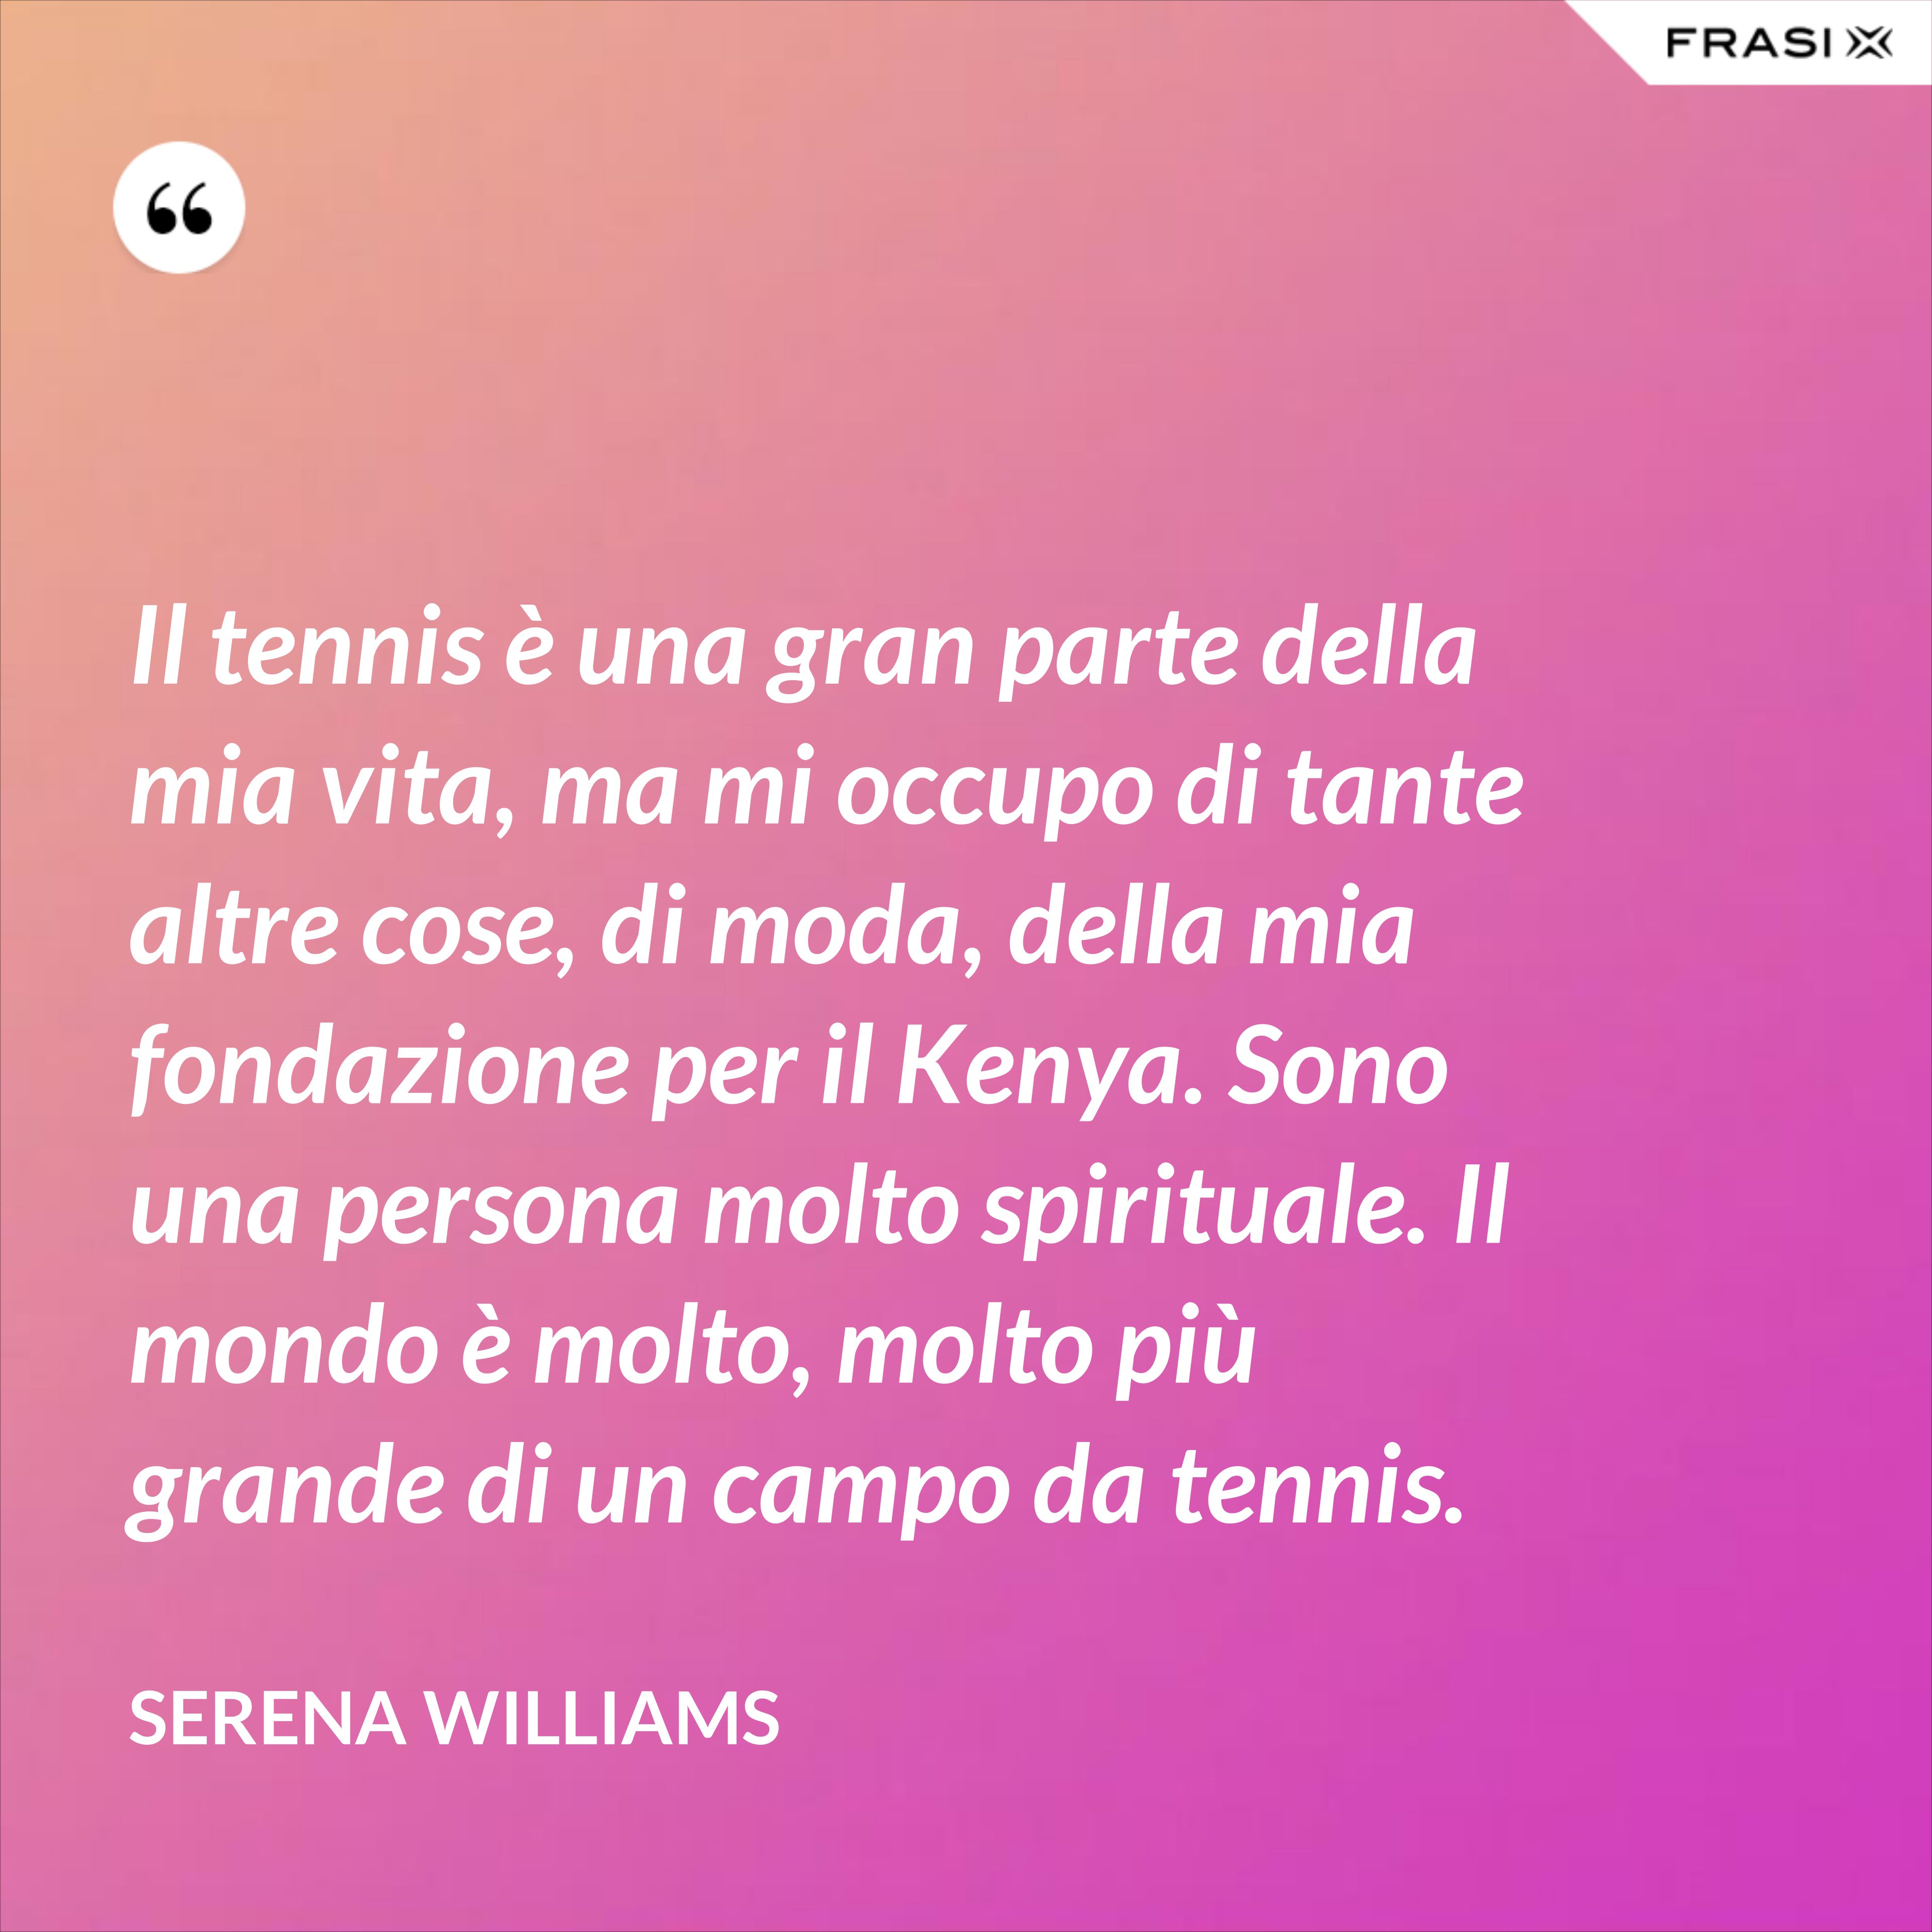 Il tennis è una gran parte della mia vita, ma mi occupo di tante altre cose, di moda, della mia fondazione per il Kenya. Sono una persona molto spirituale. Il mondo è molto, molto più grande di un campo da tennis. - Serena Williams